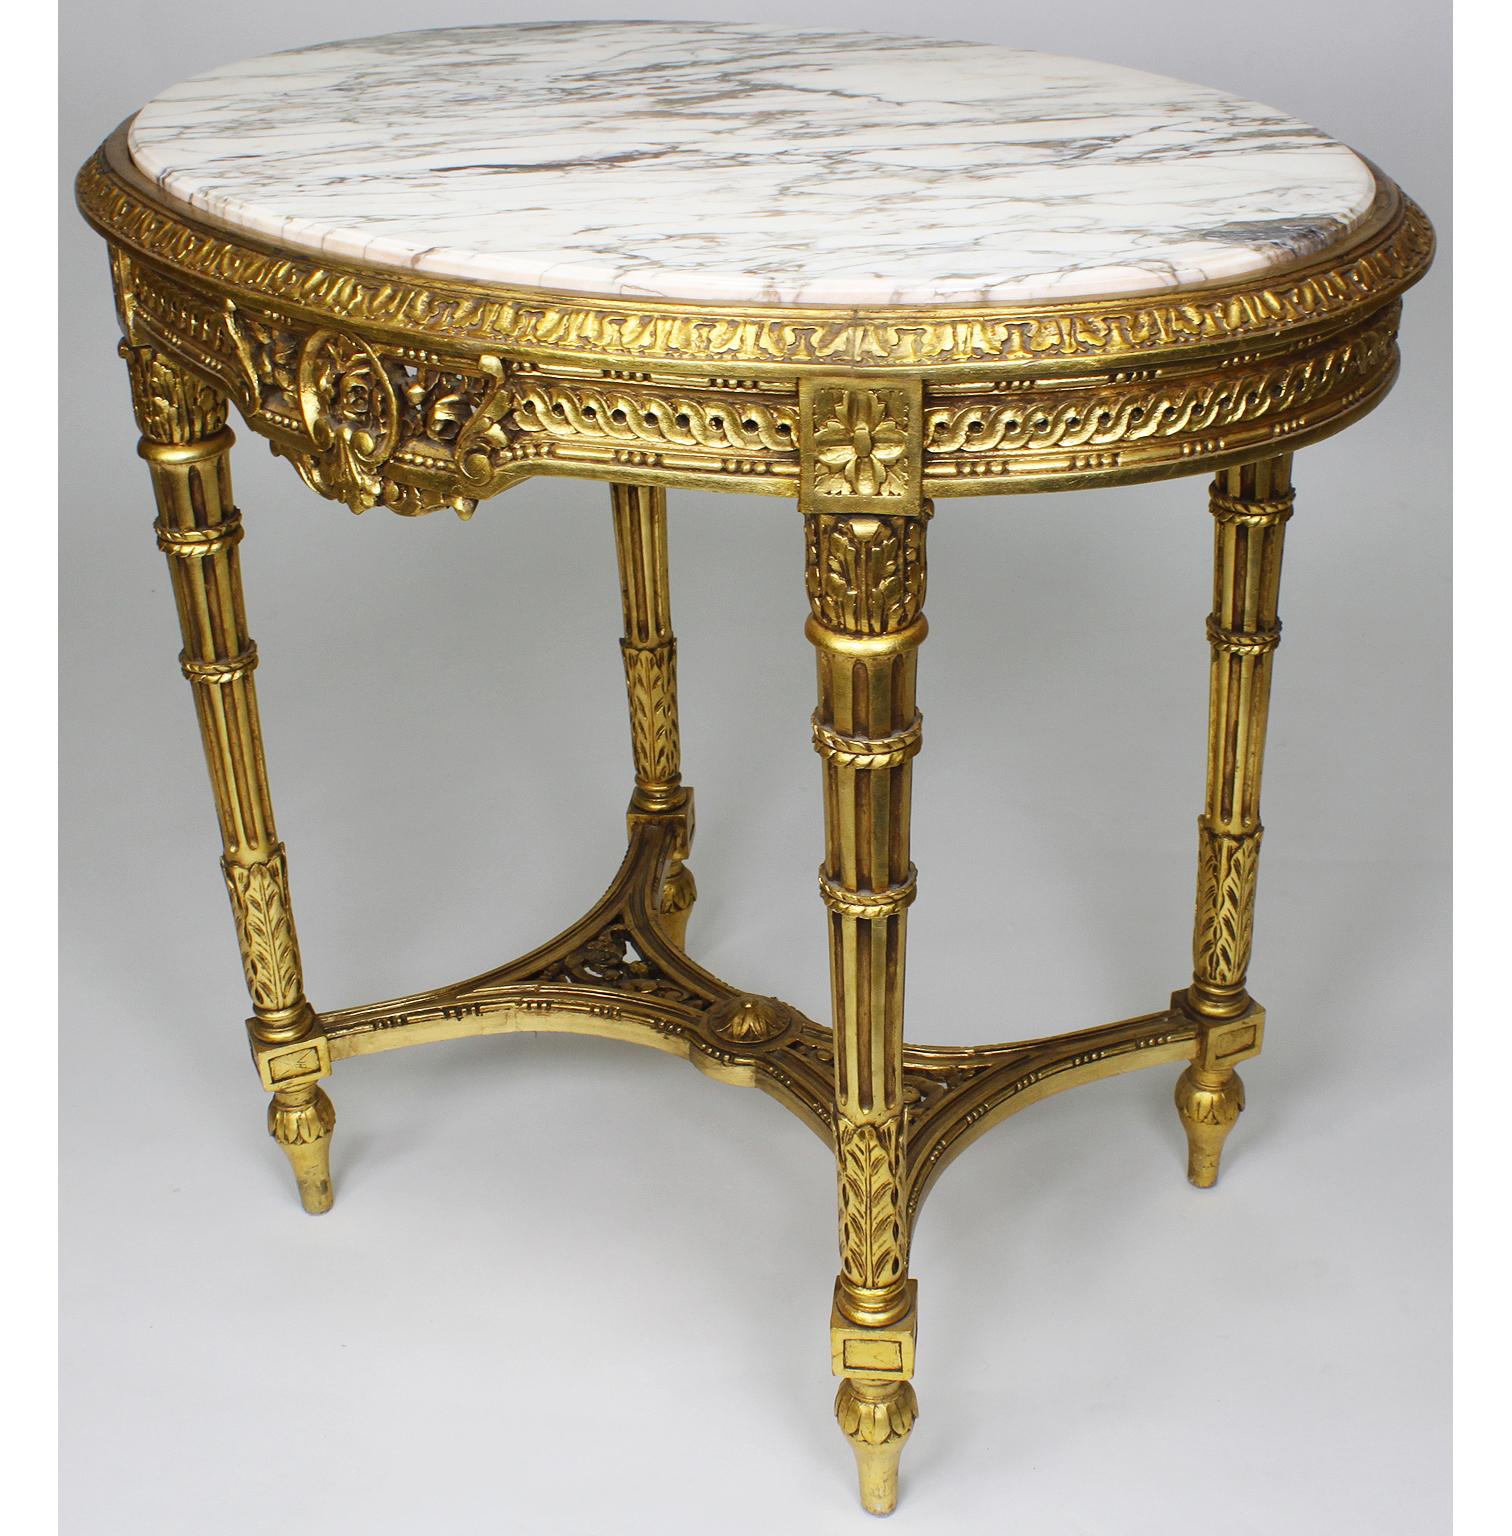 Ovaler, geschnitzter Mitteltisch aus Goldholz mit Marmorplatte im französischen Louis XVI-Stil. Die kunstvoll verzierte Schürze ist mit einer geäderten weißen Marmorplatte versehen und steht auf vier kannelierten Beinen, die mit einer geschnitzten